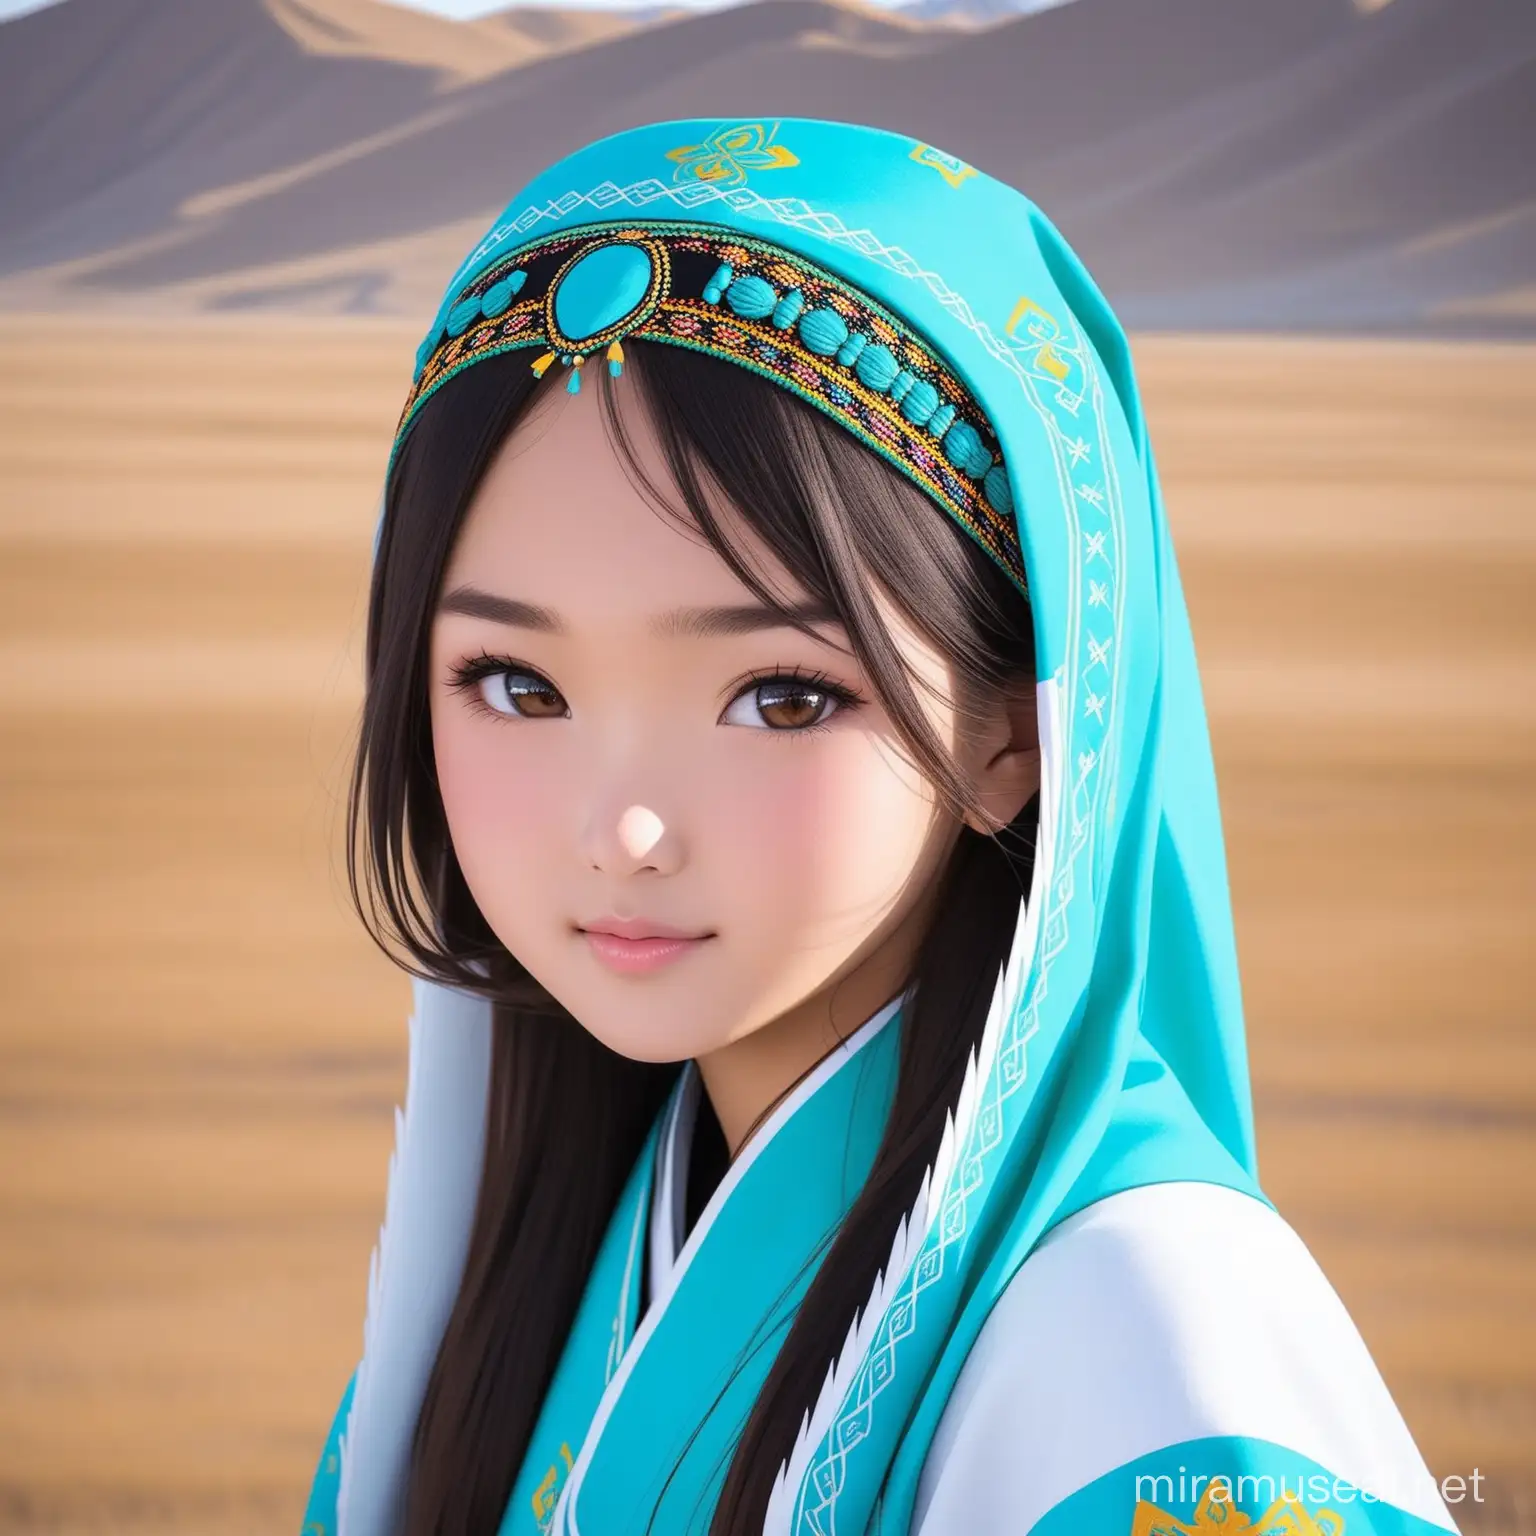 kazakh girl 